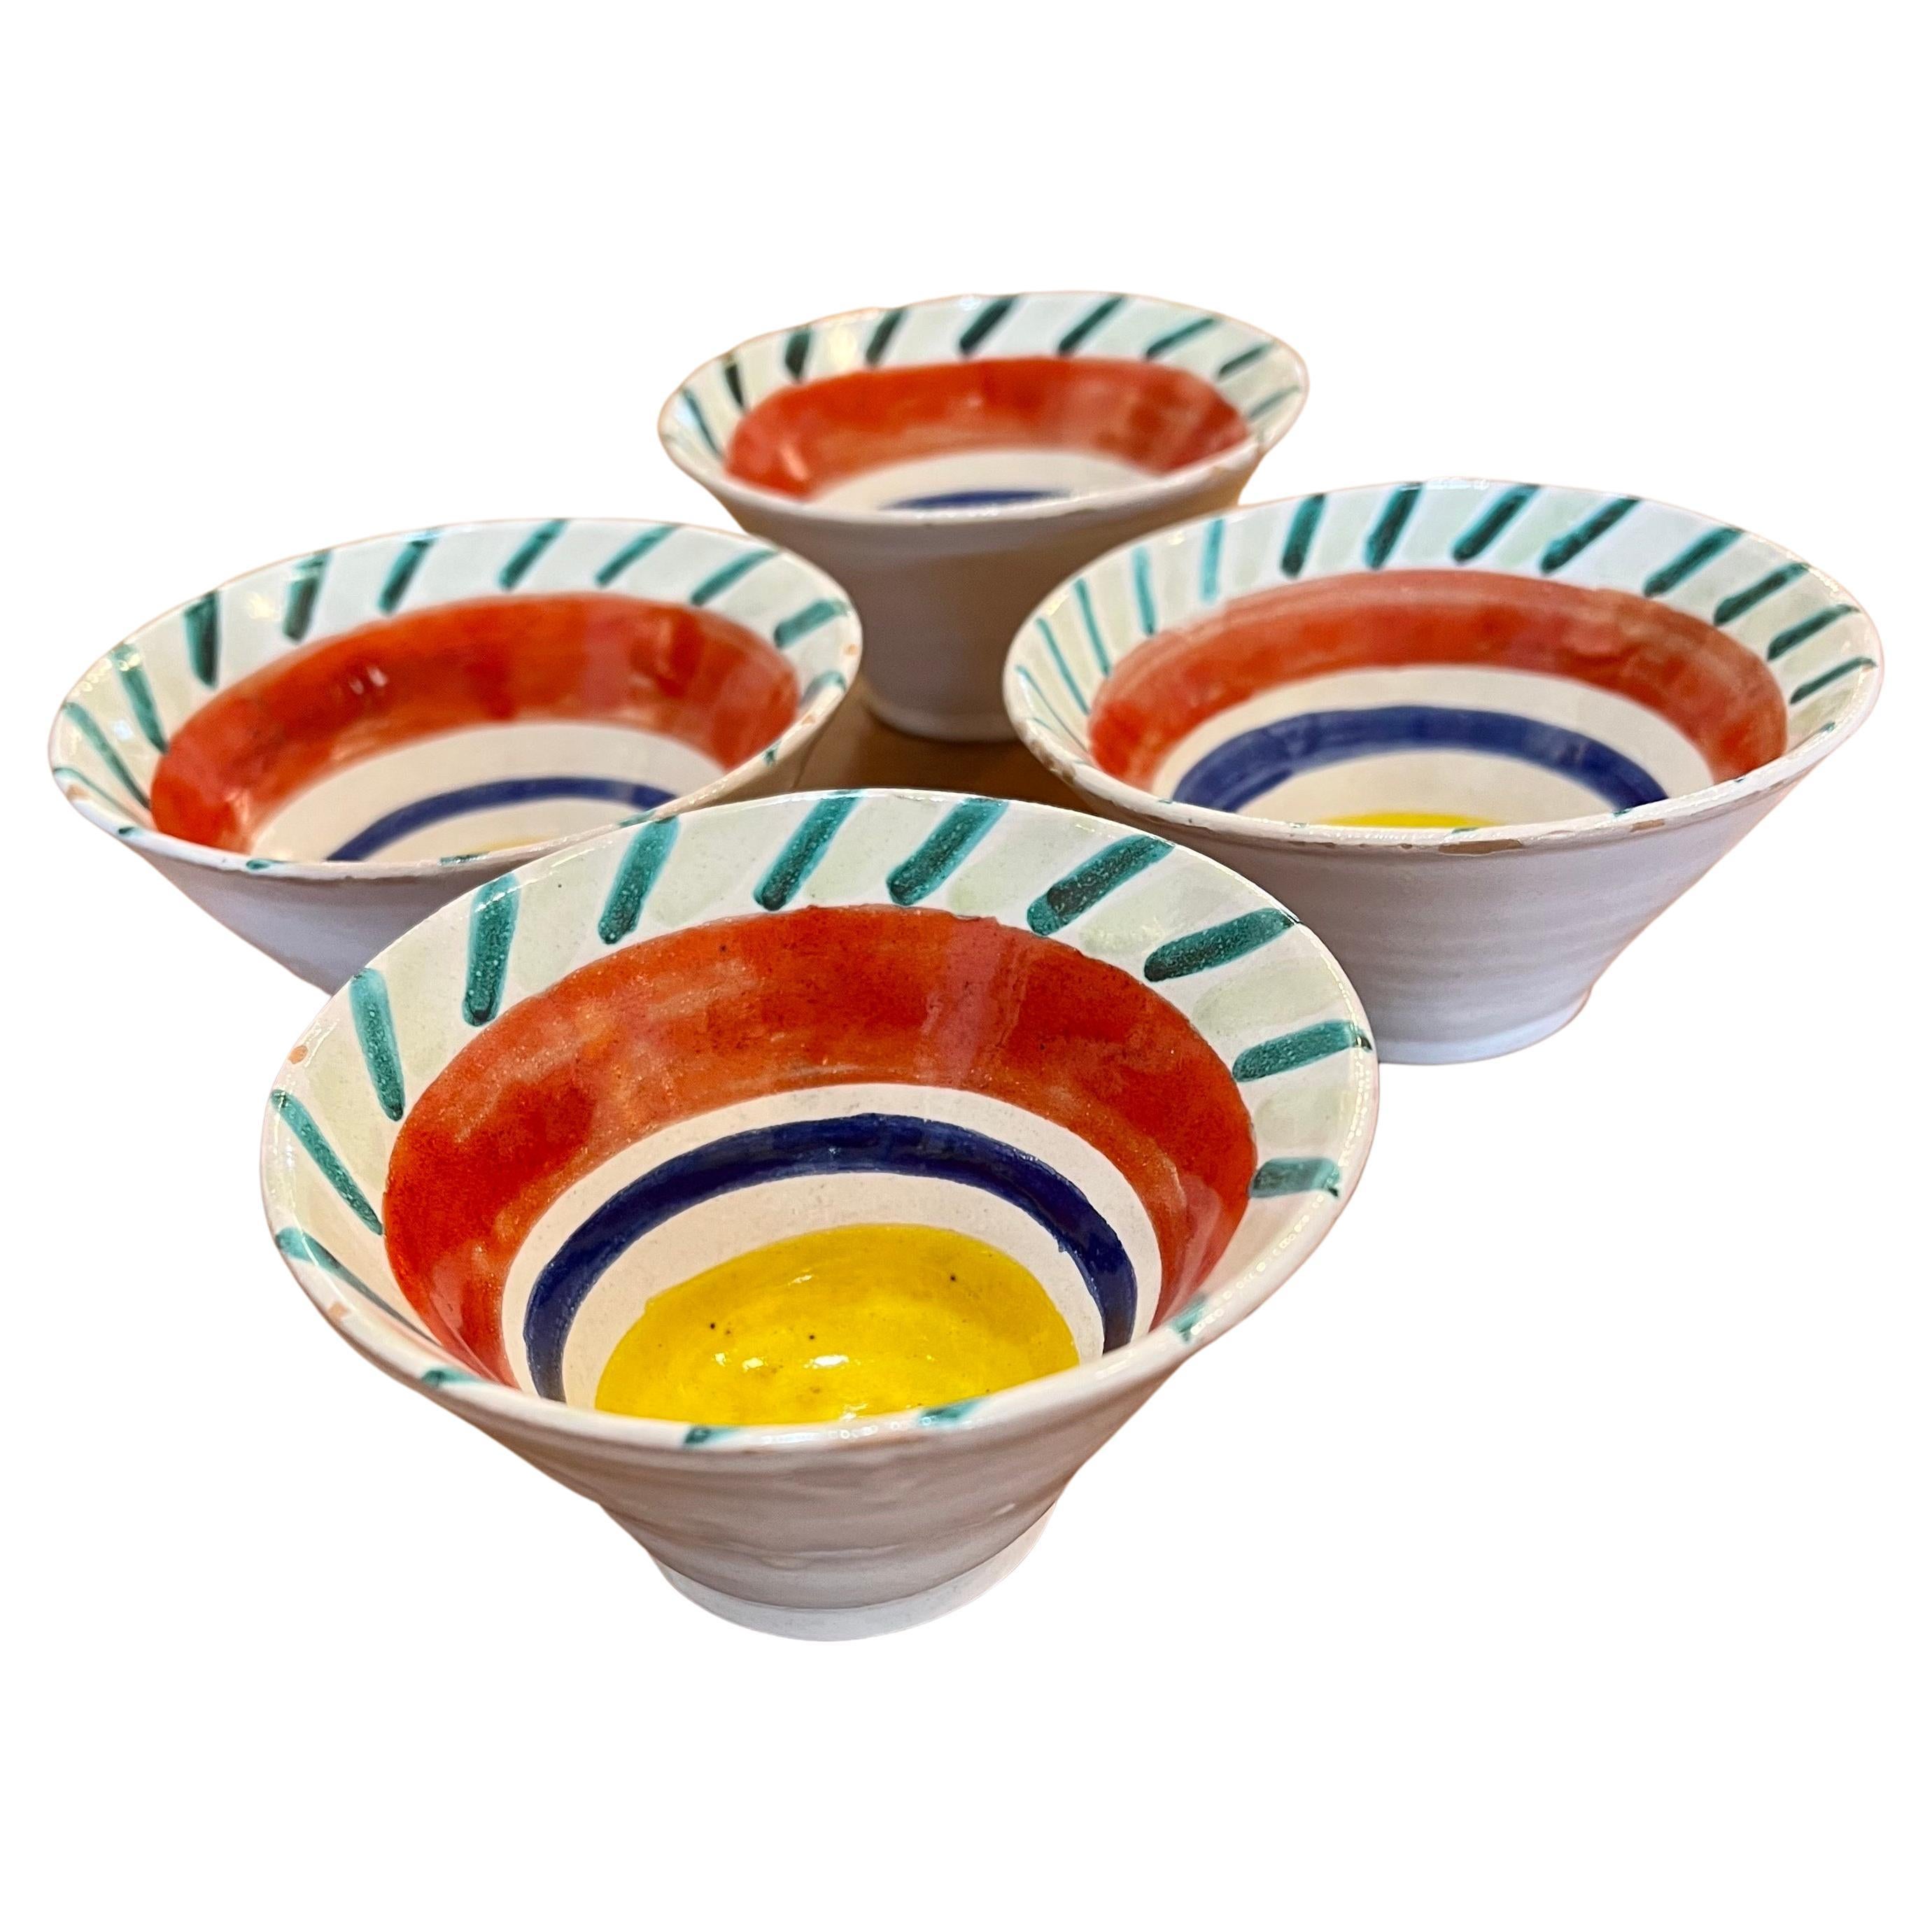 Ensemble de 4 tasses à dessert décoratives italiennes rares peintes à la main par DeSimone, vers les années 1960. Les mugs sont en bon état vintage.